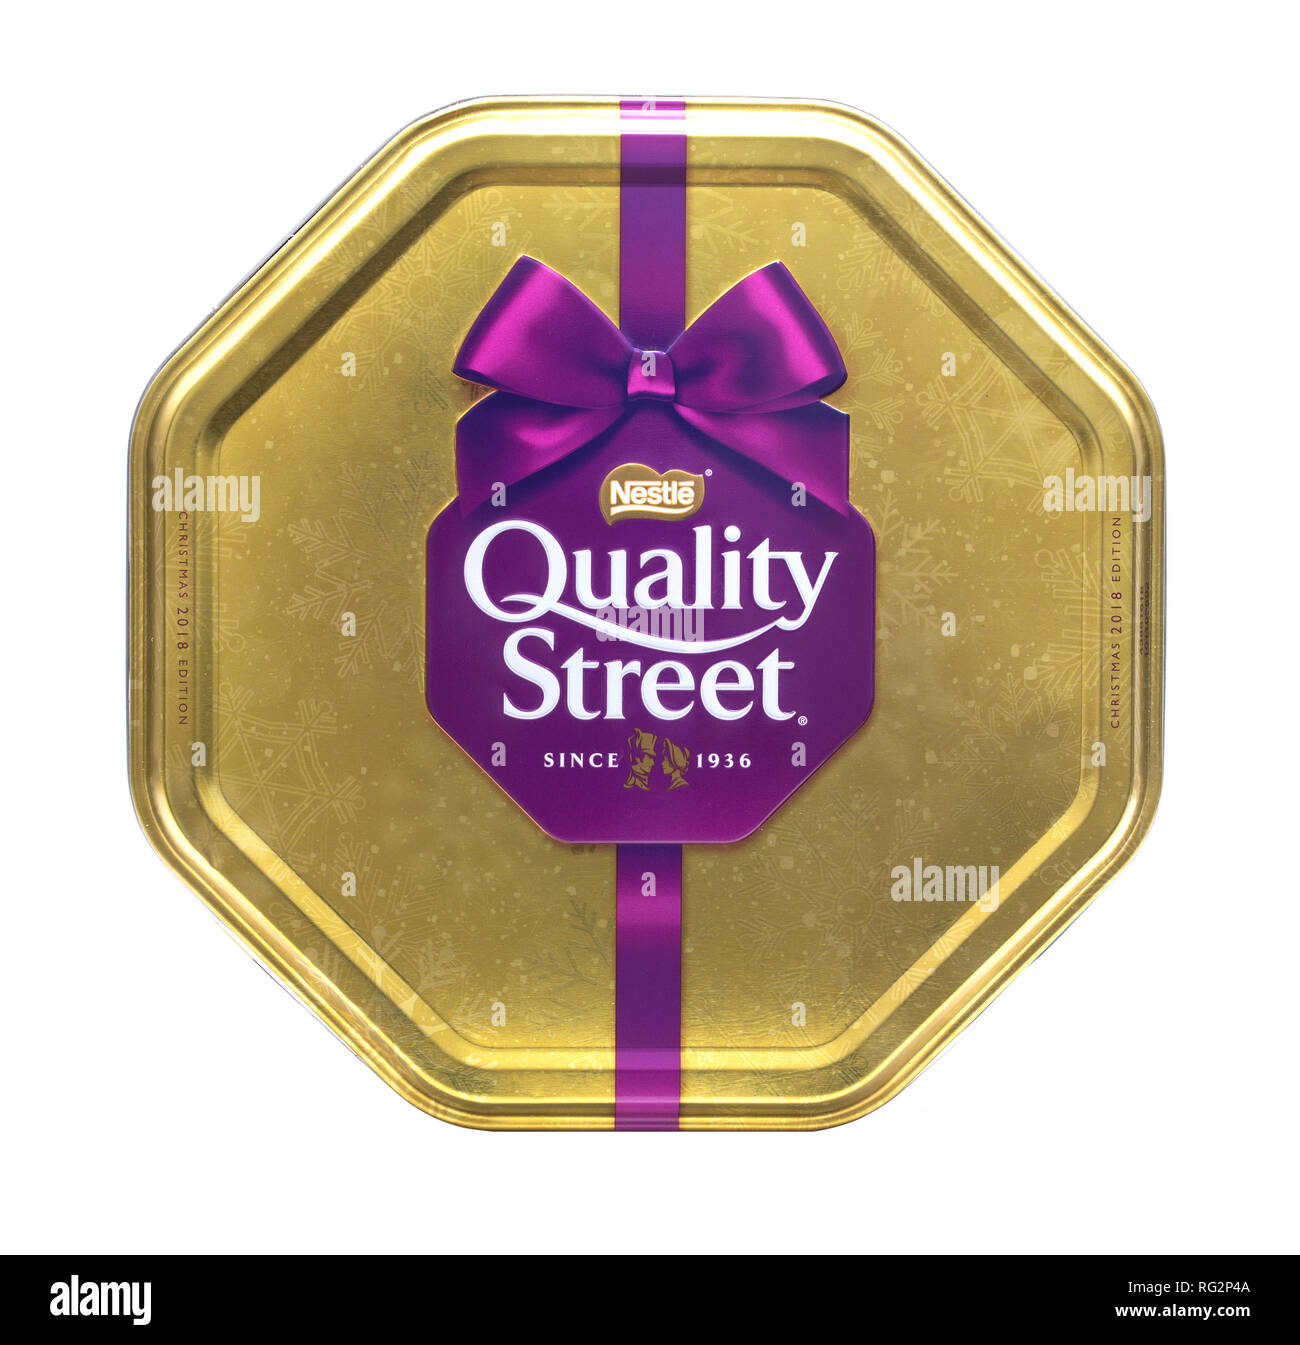 SWINDON, Großbritannien - 20 Dezember, 2018: Christmas Edition Quality Street Schokolade Zinn isoliert auf weißem Hintergrund. von Nestle in England hergestellt. Stockfoto